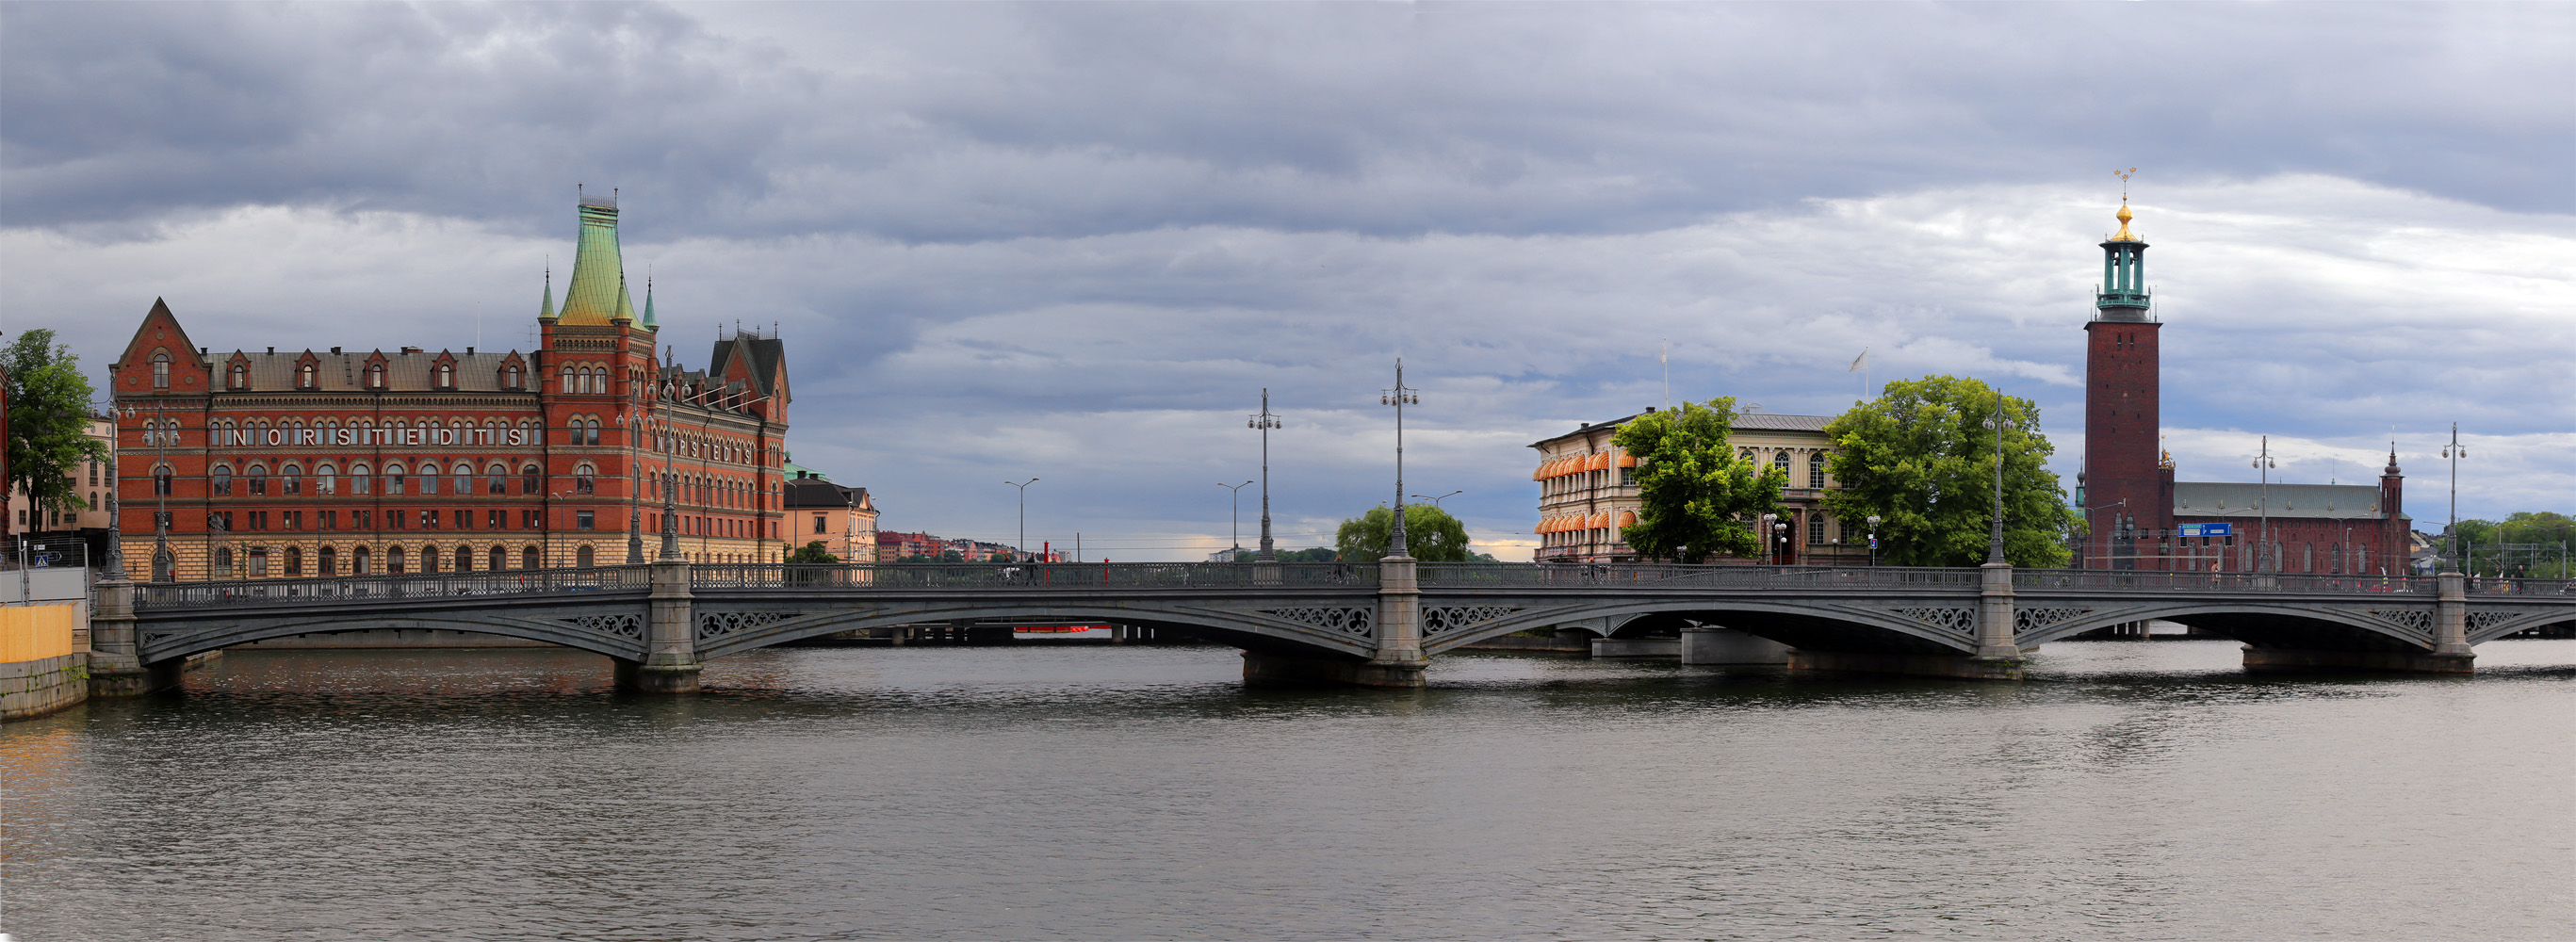 bill-hocker-vasa-bridge-stockholm-sweden-2019